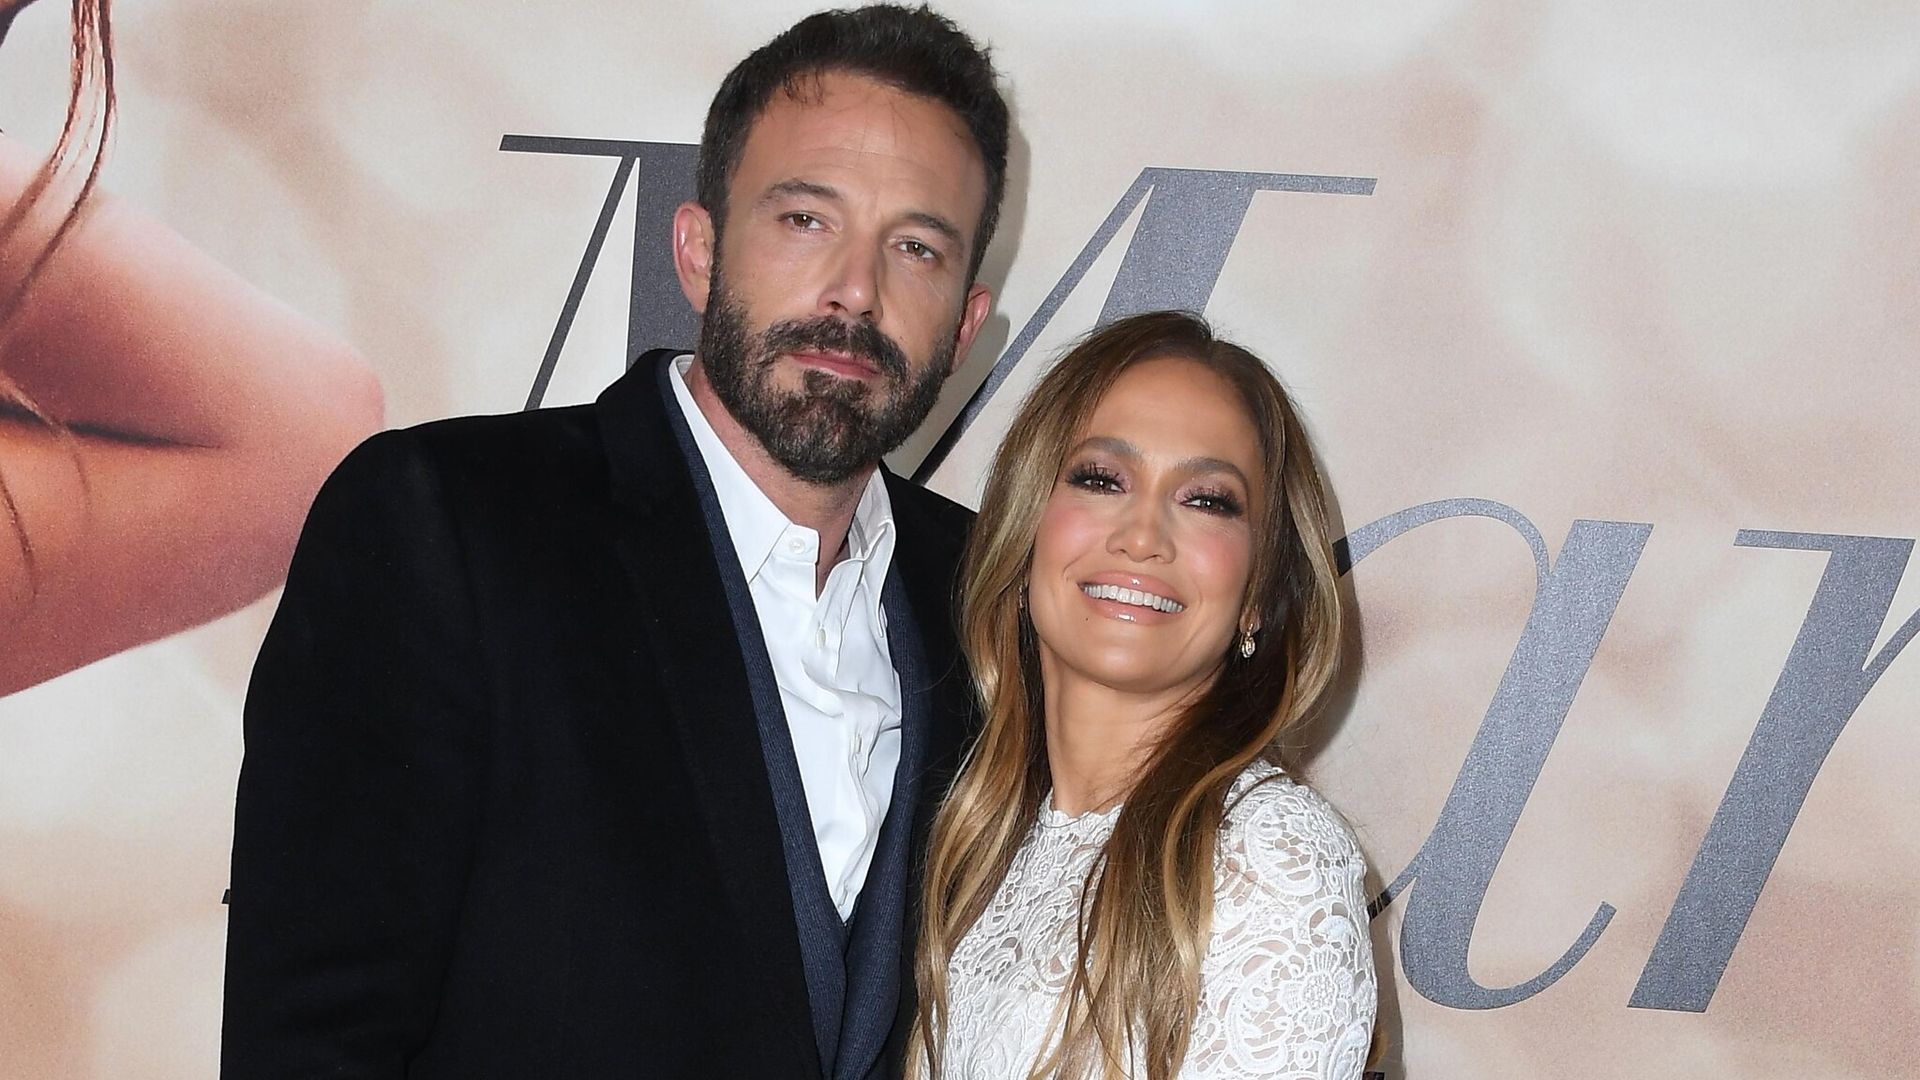 Un exmonje hindú será el encargado de oficiar la boda de Jennifer Lopez y Ben Affleck